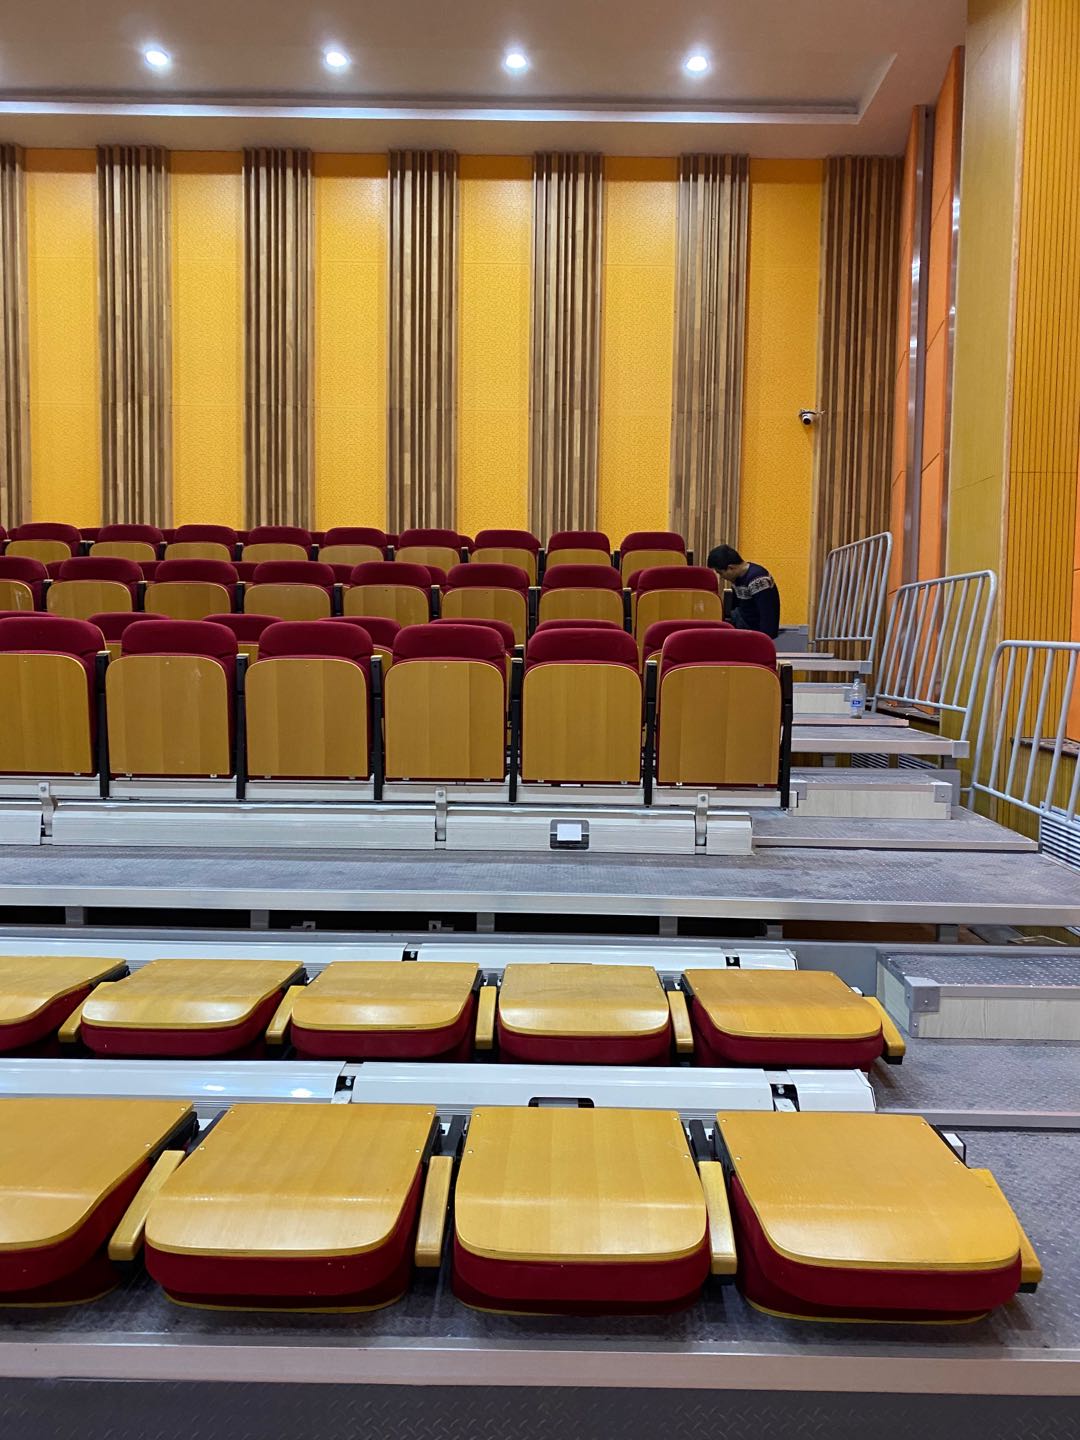 固定式观众席看台座椅 线条流畅 安全措施